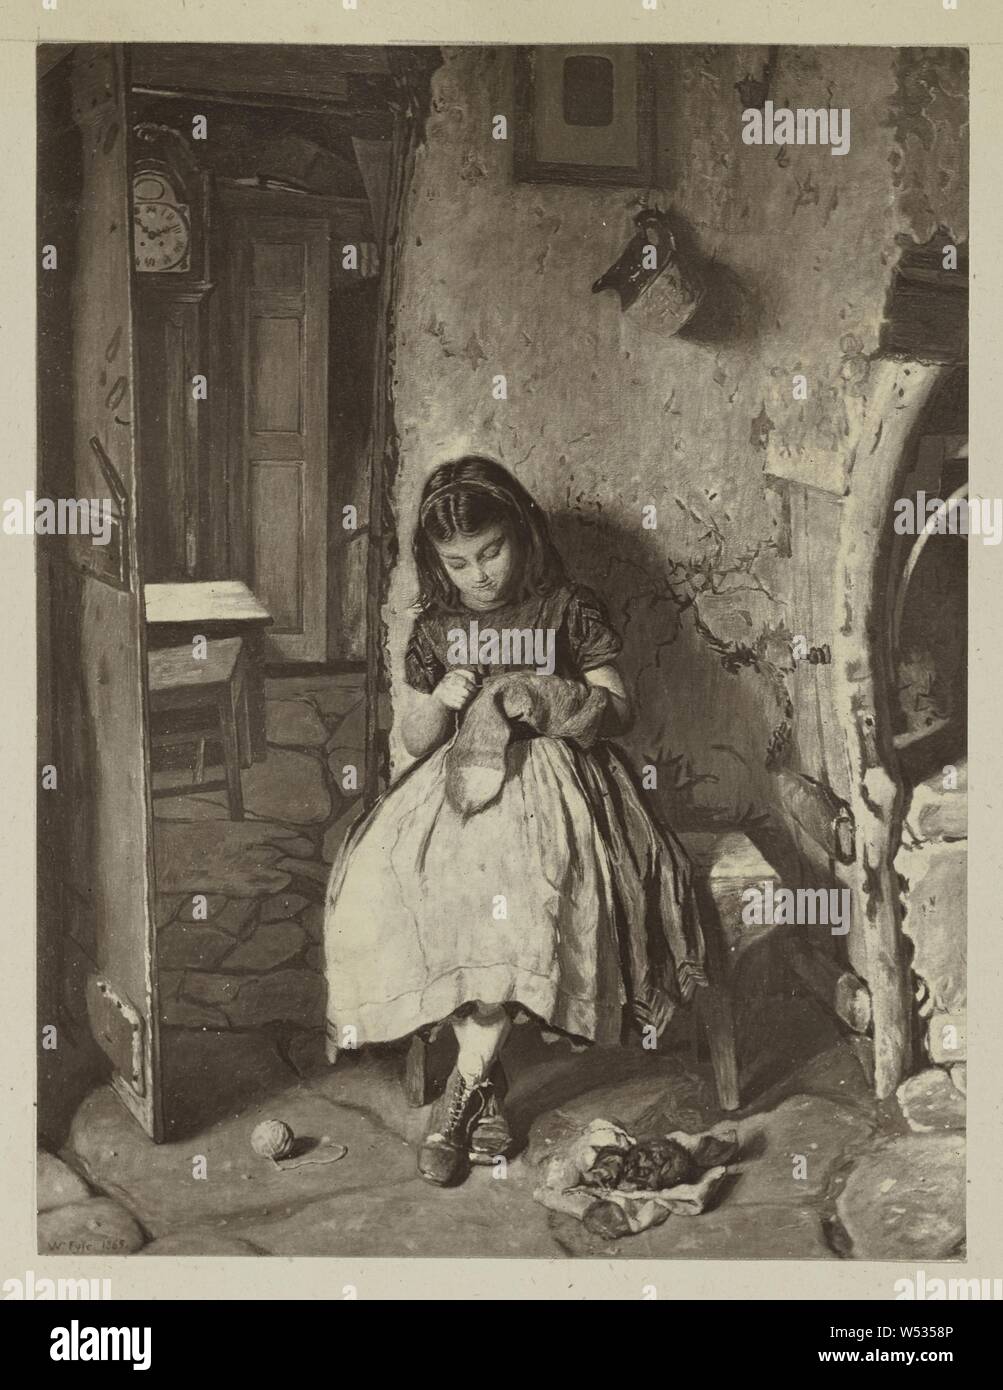 Ausbesserung des Vaters Socken von William Baxter Collier Fyfe, unbekannte Teekocher, Europa, 1870s Carbon drucken, 13 × 10 cm (5 1/8 x 3 15/16 in Stockfoto